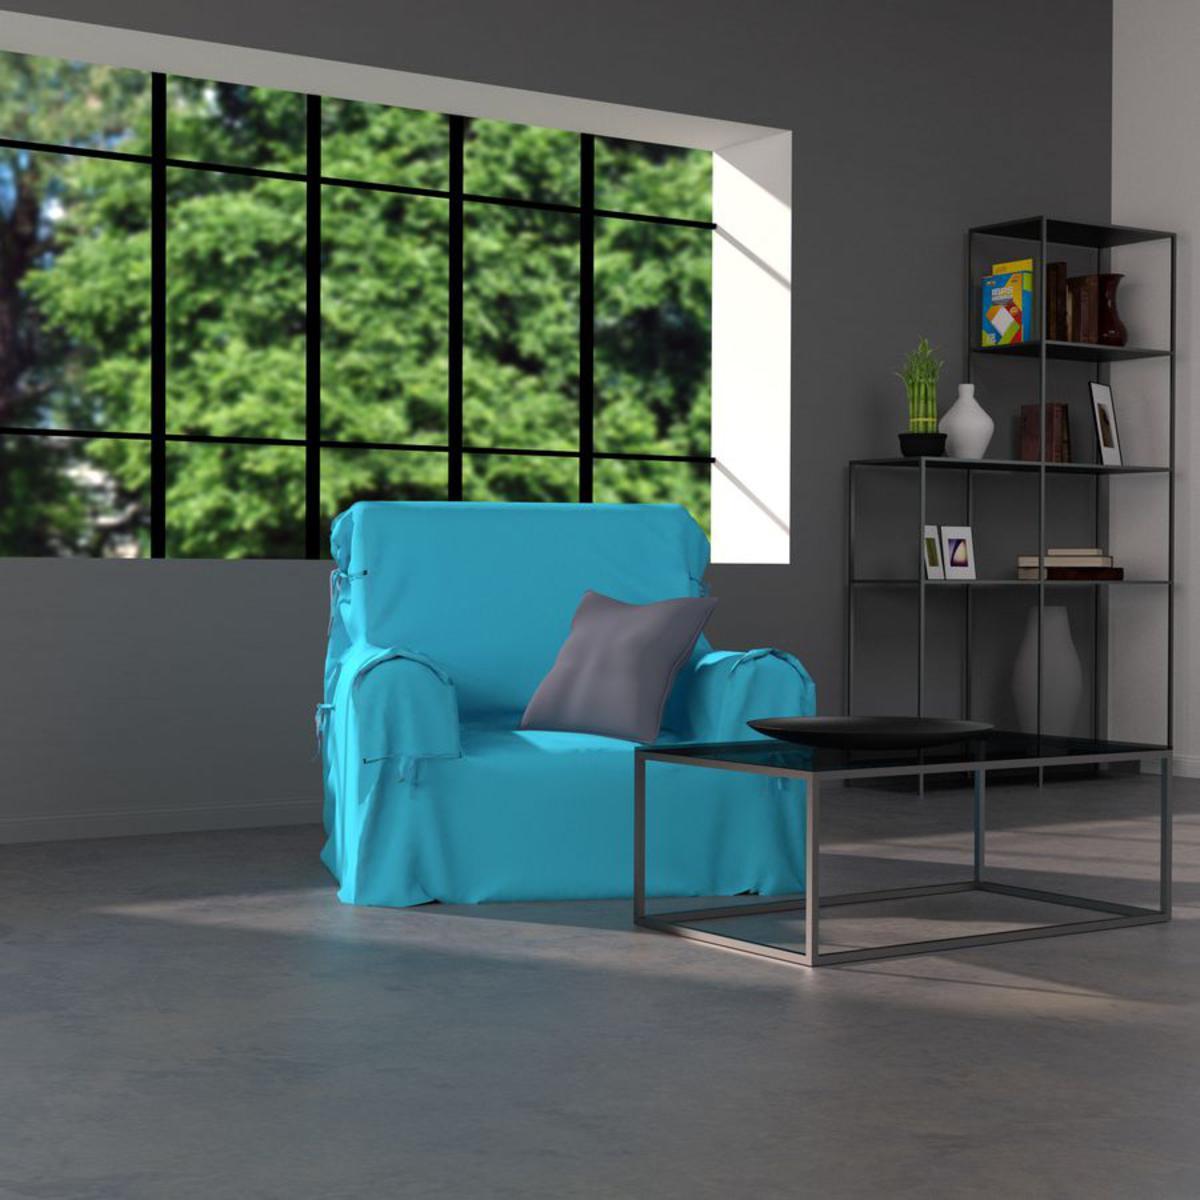 Housse de fauteuil Panama en coton - 90 x 90 x 60 cm - Bleu turquoise